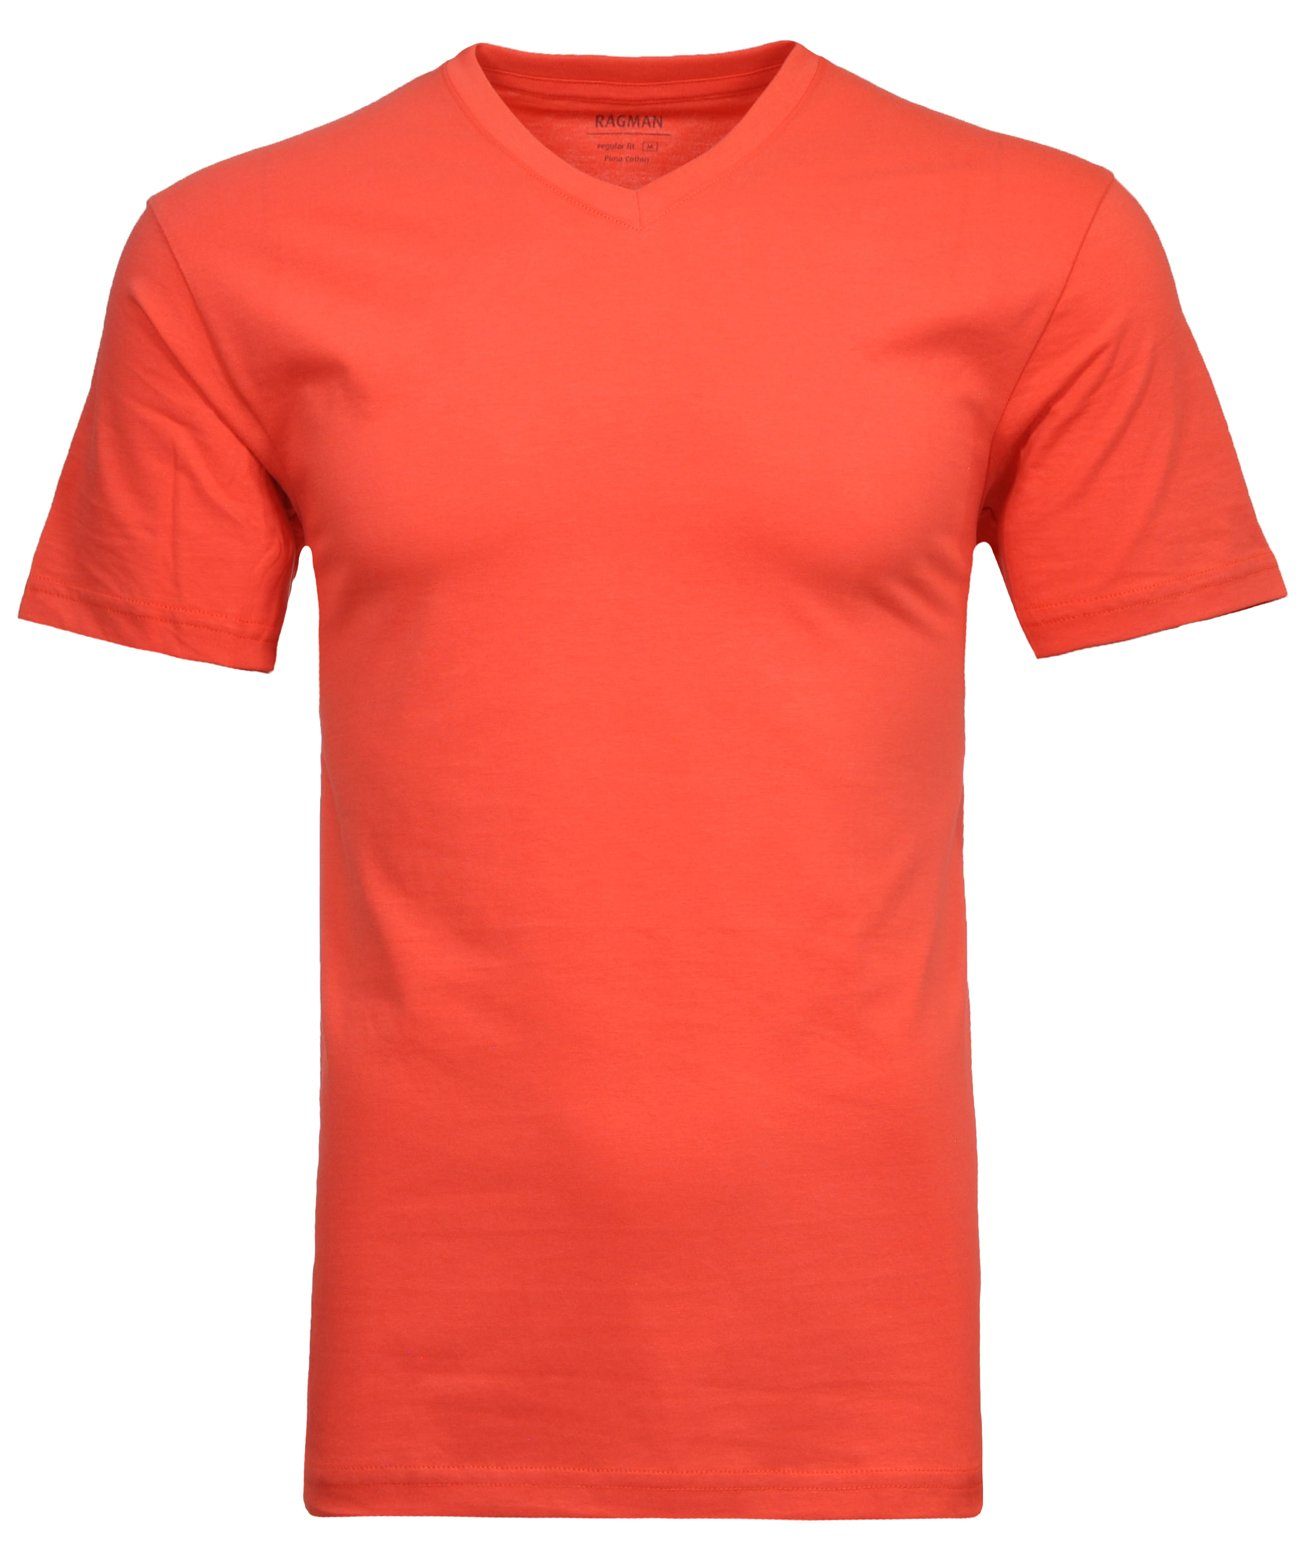 RAGMAN Koralle-652 T-Shirt